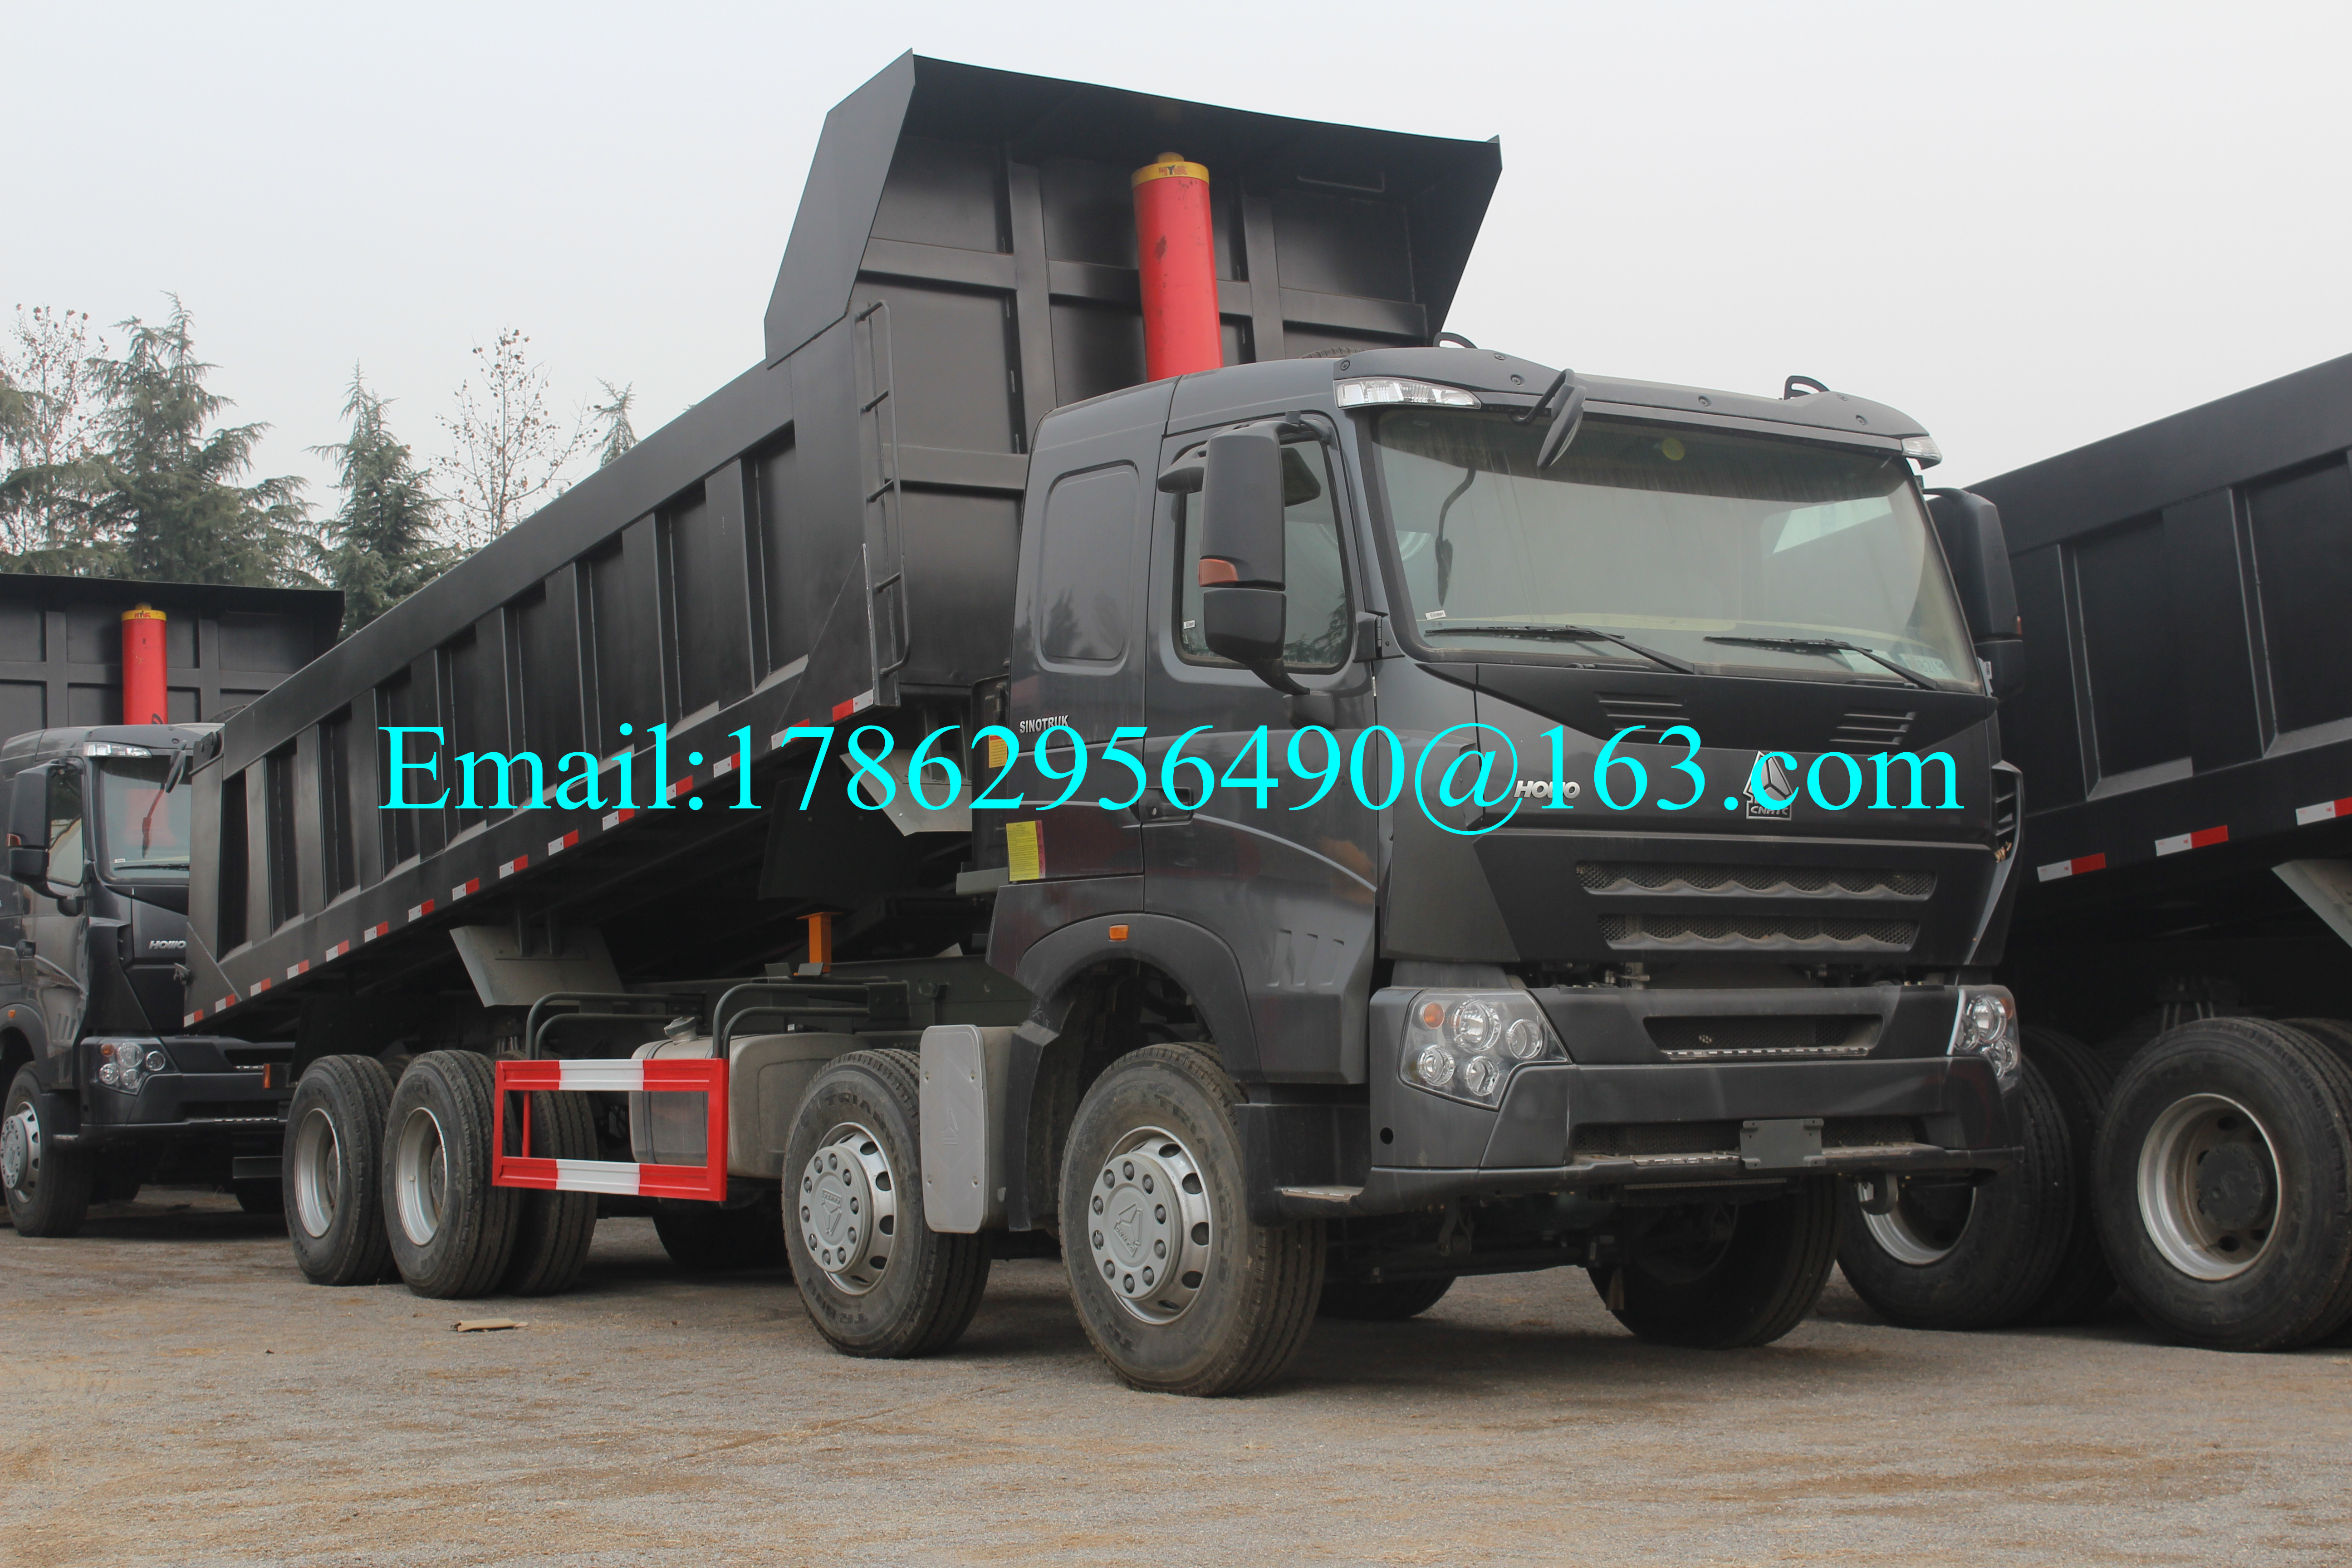 سیاه و سفید 371 HP 8x4 کامیون های سنگین وظیفه با ZF8118 دنده چرخ دنده و HW76 کابین